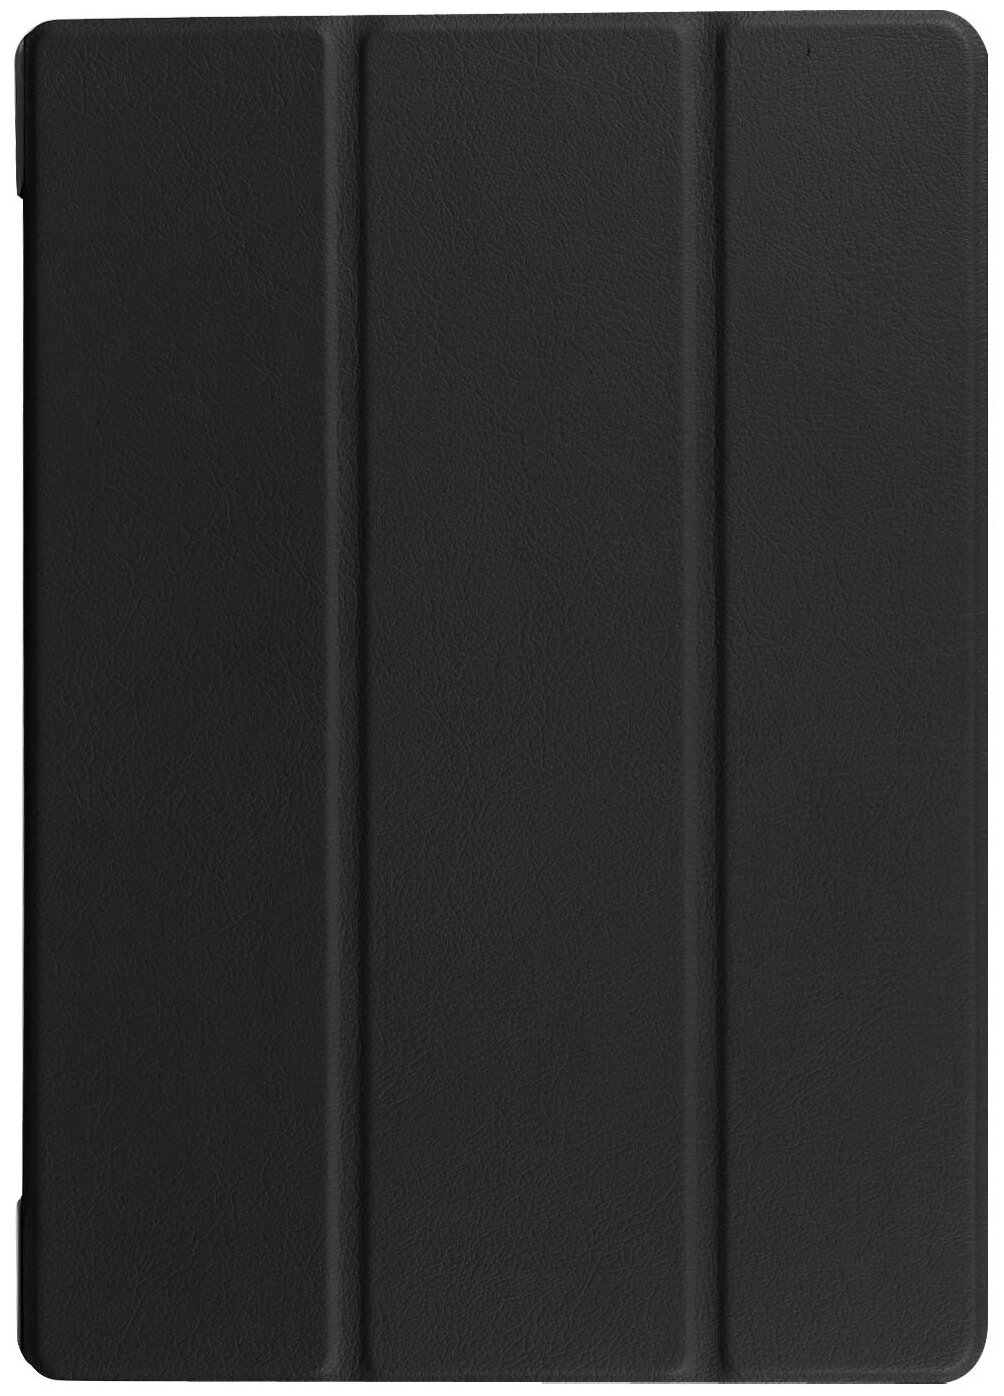 Чехол-обложка MyPads для Lenovo TB-8703N / X (ZA230018RU) тонкий умный кожаный на пластиковой основе с трансформацией в подставку черный